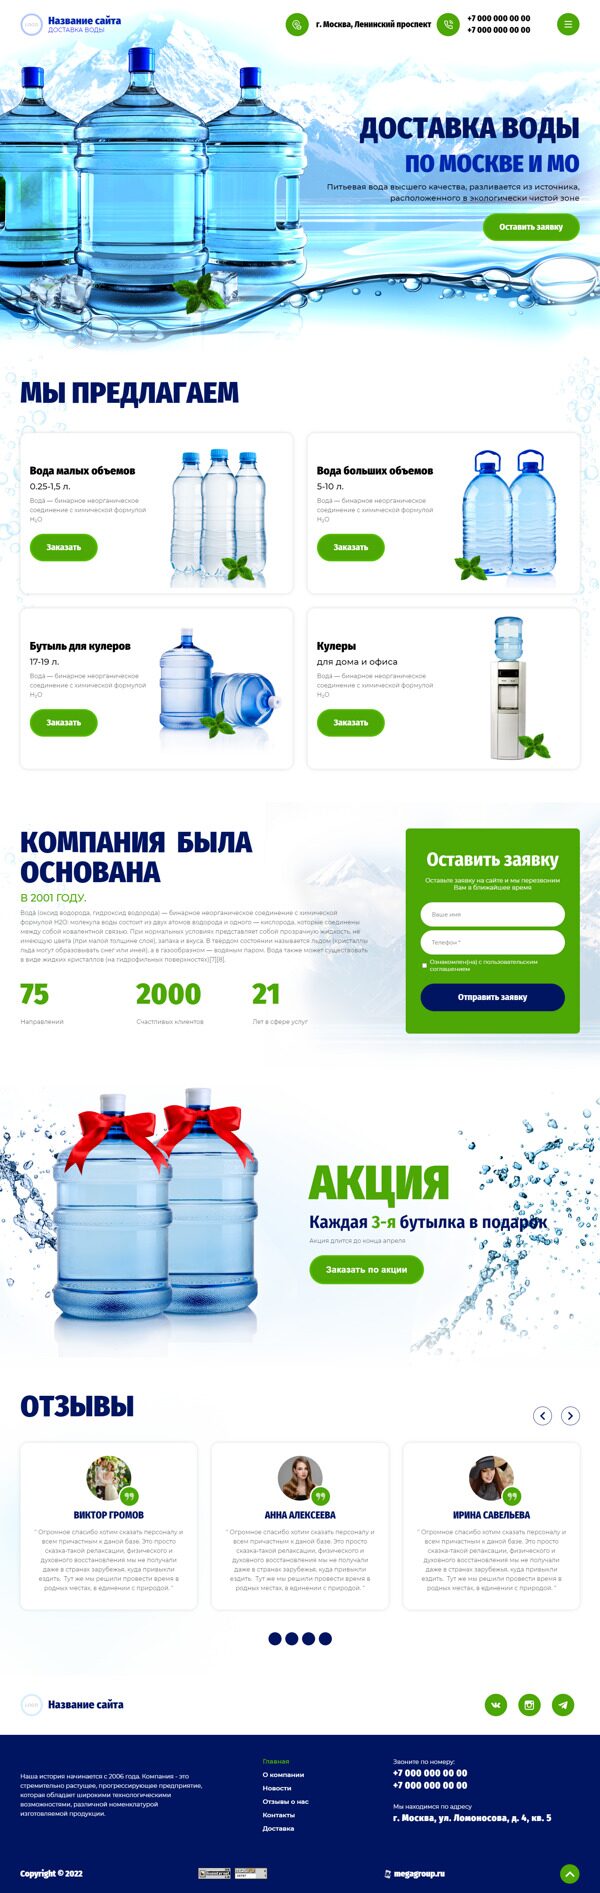 Готовый Сайт-Бизнес № 3942326 - Продажа и доставка питьевой воды (Десктопная версия)